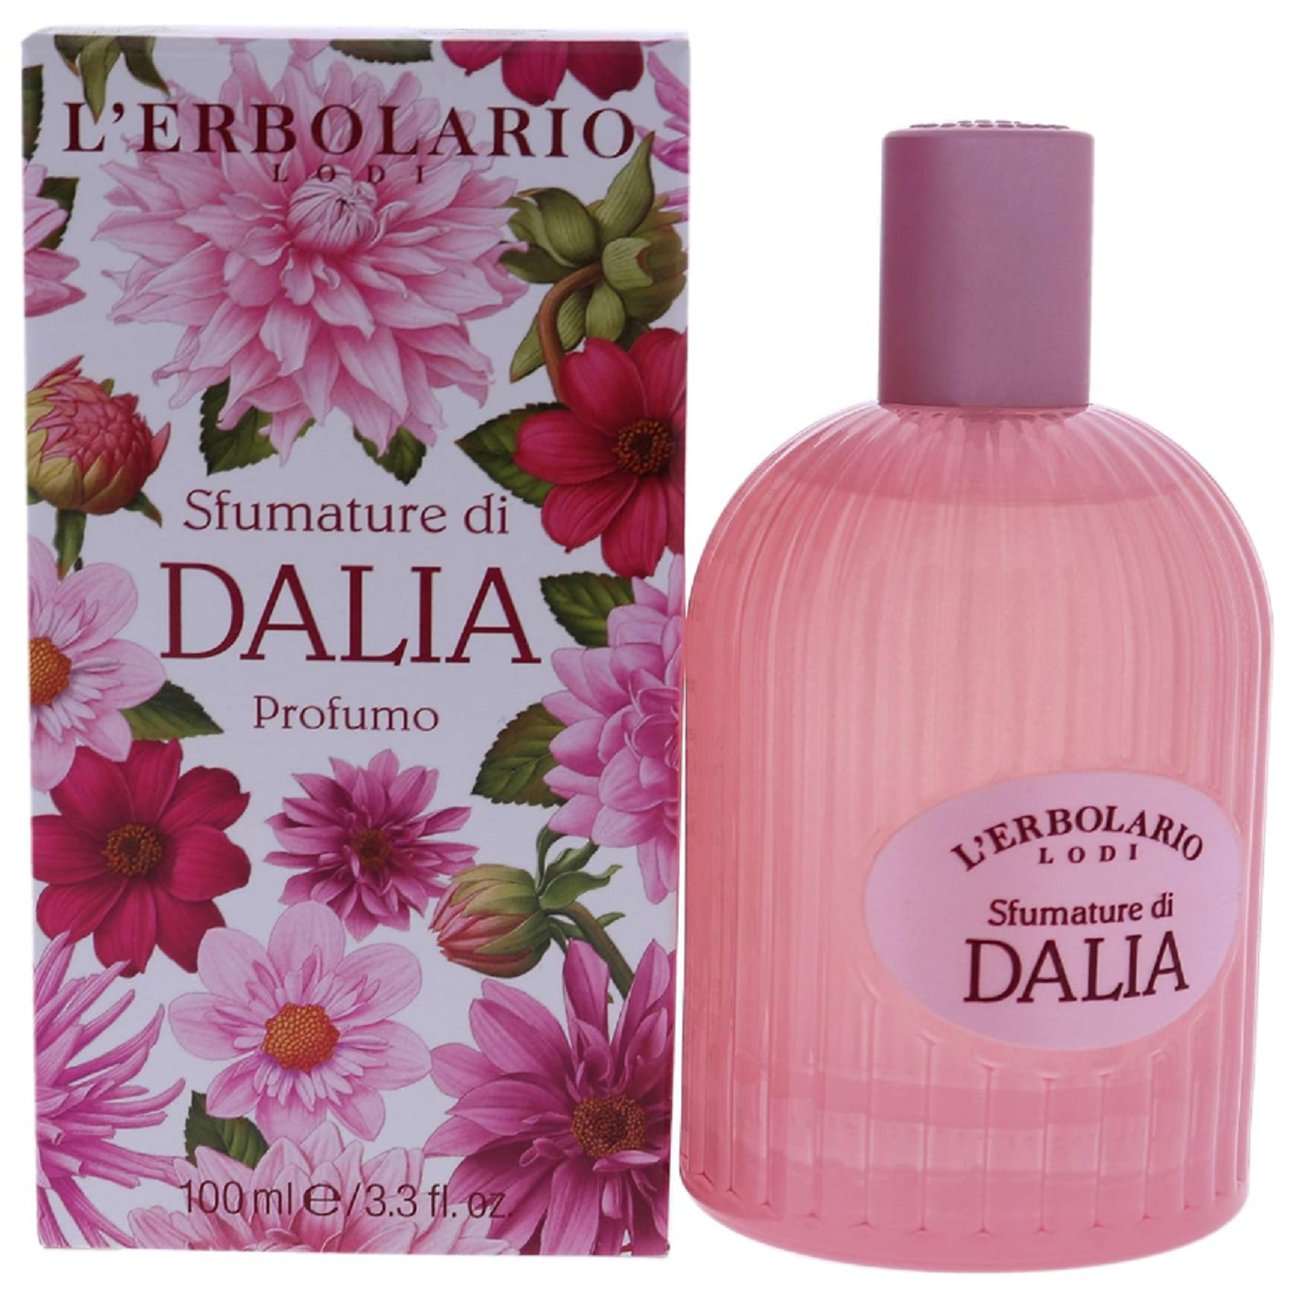 L'Erbolario - Shades of Dahlia Parfum